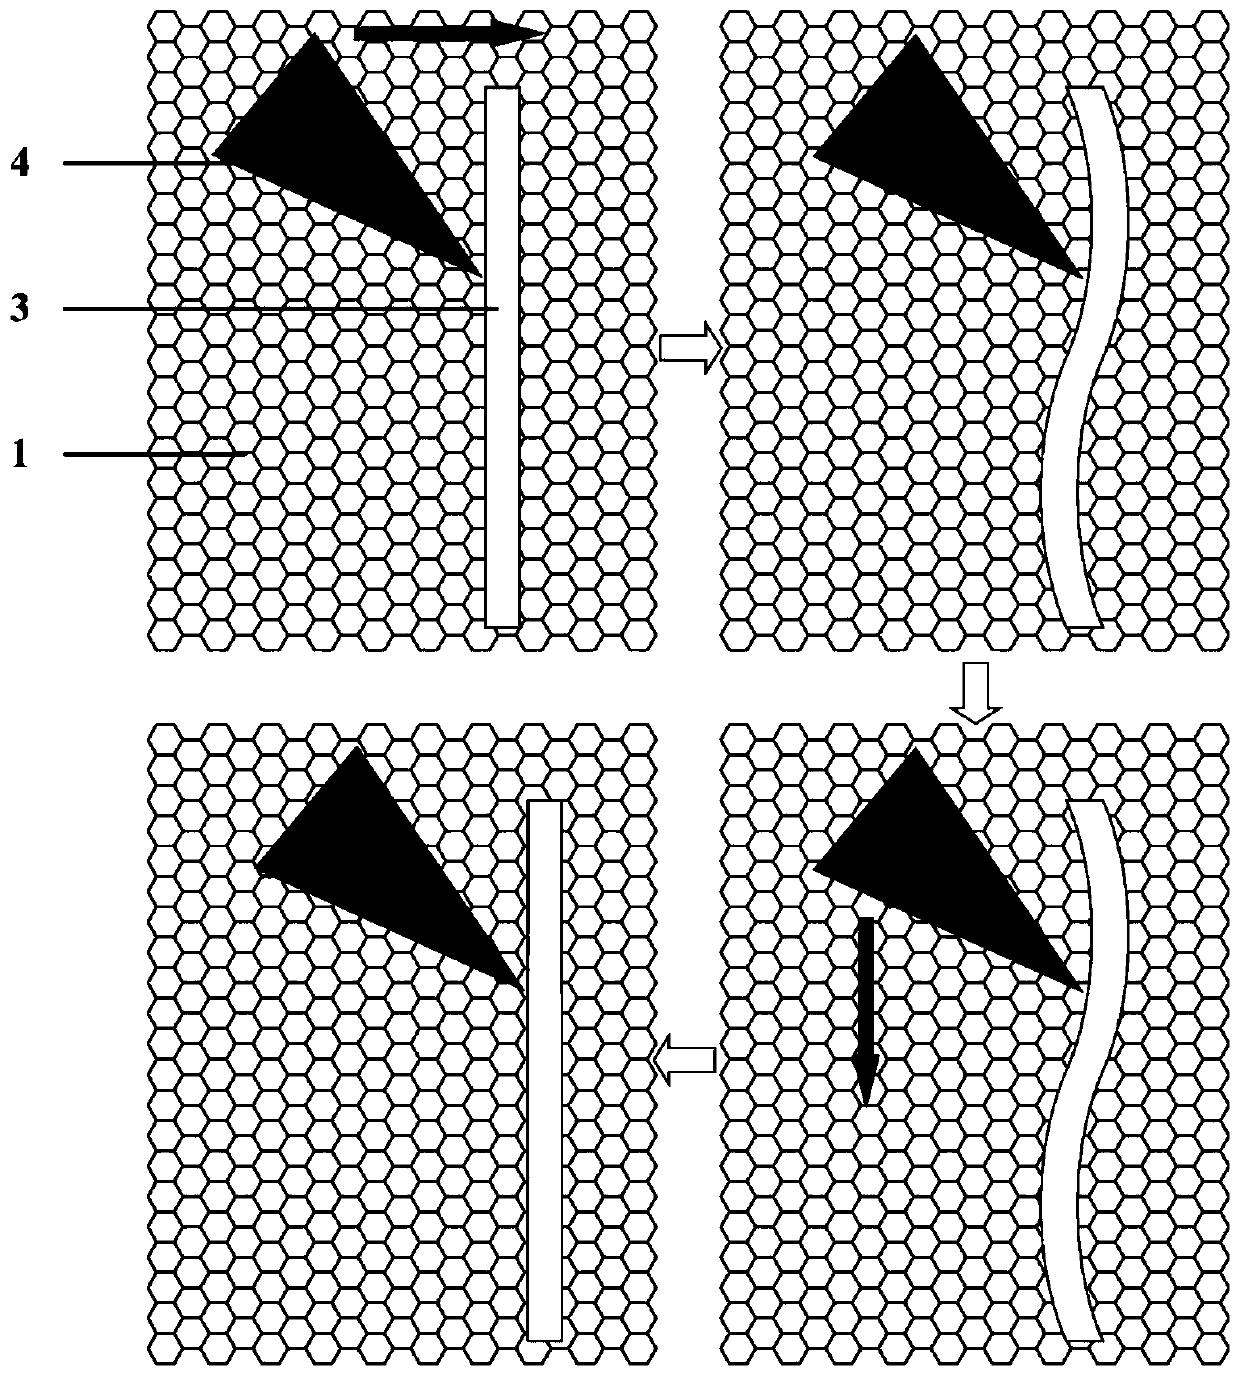 Preparation method of graphene nanoribbons